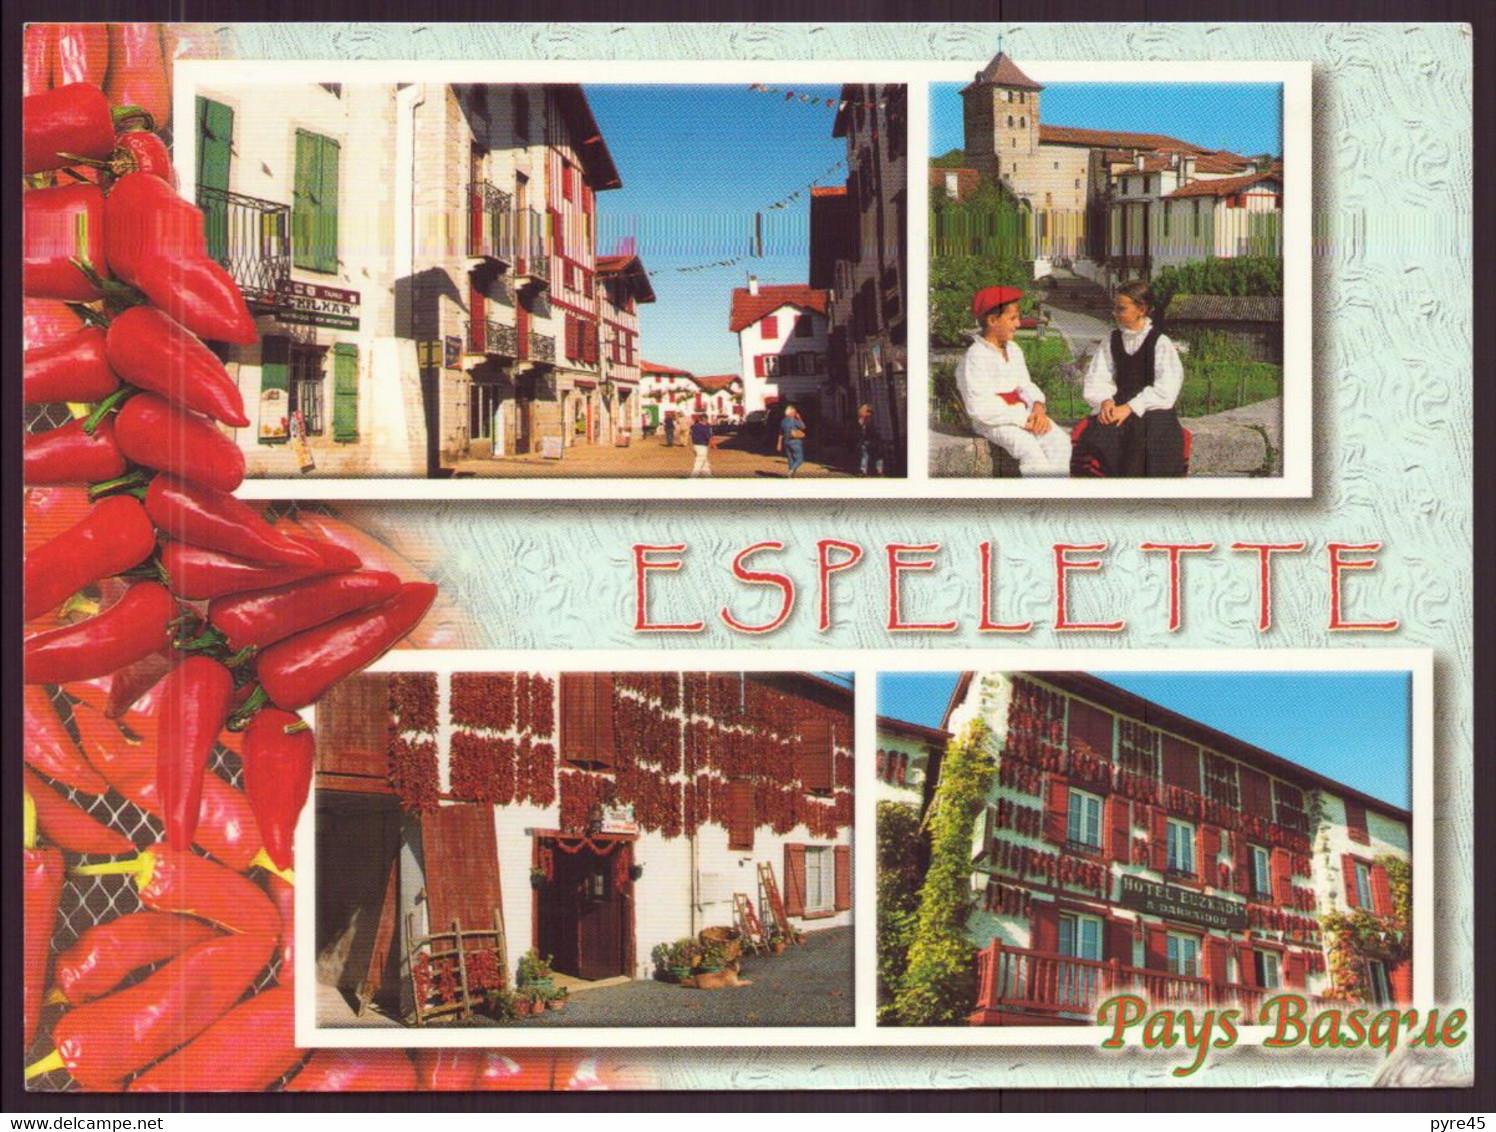 ESPELETTE 64 - Espelette